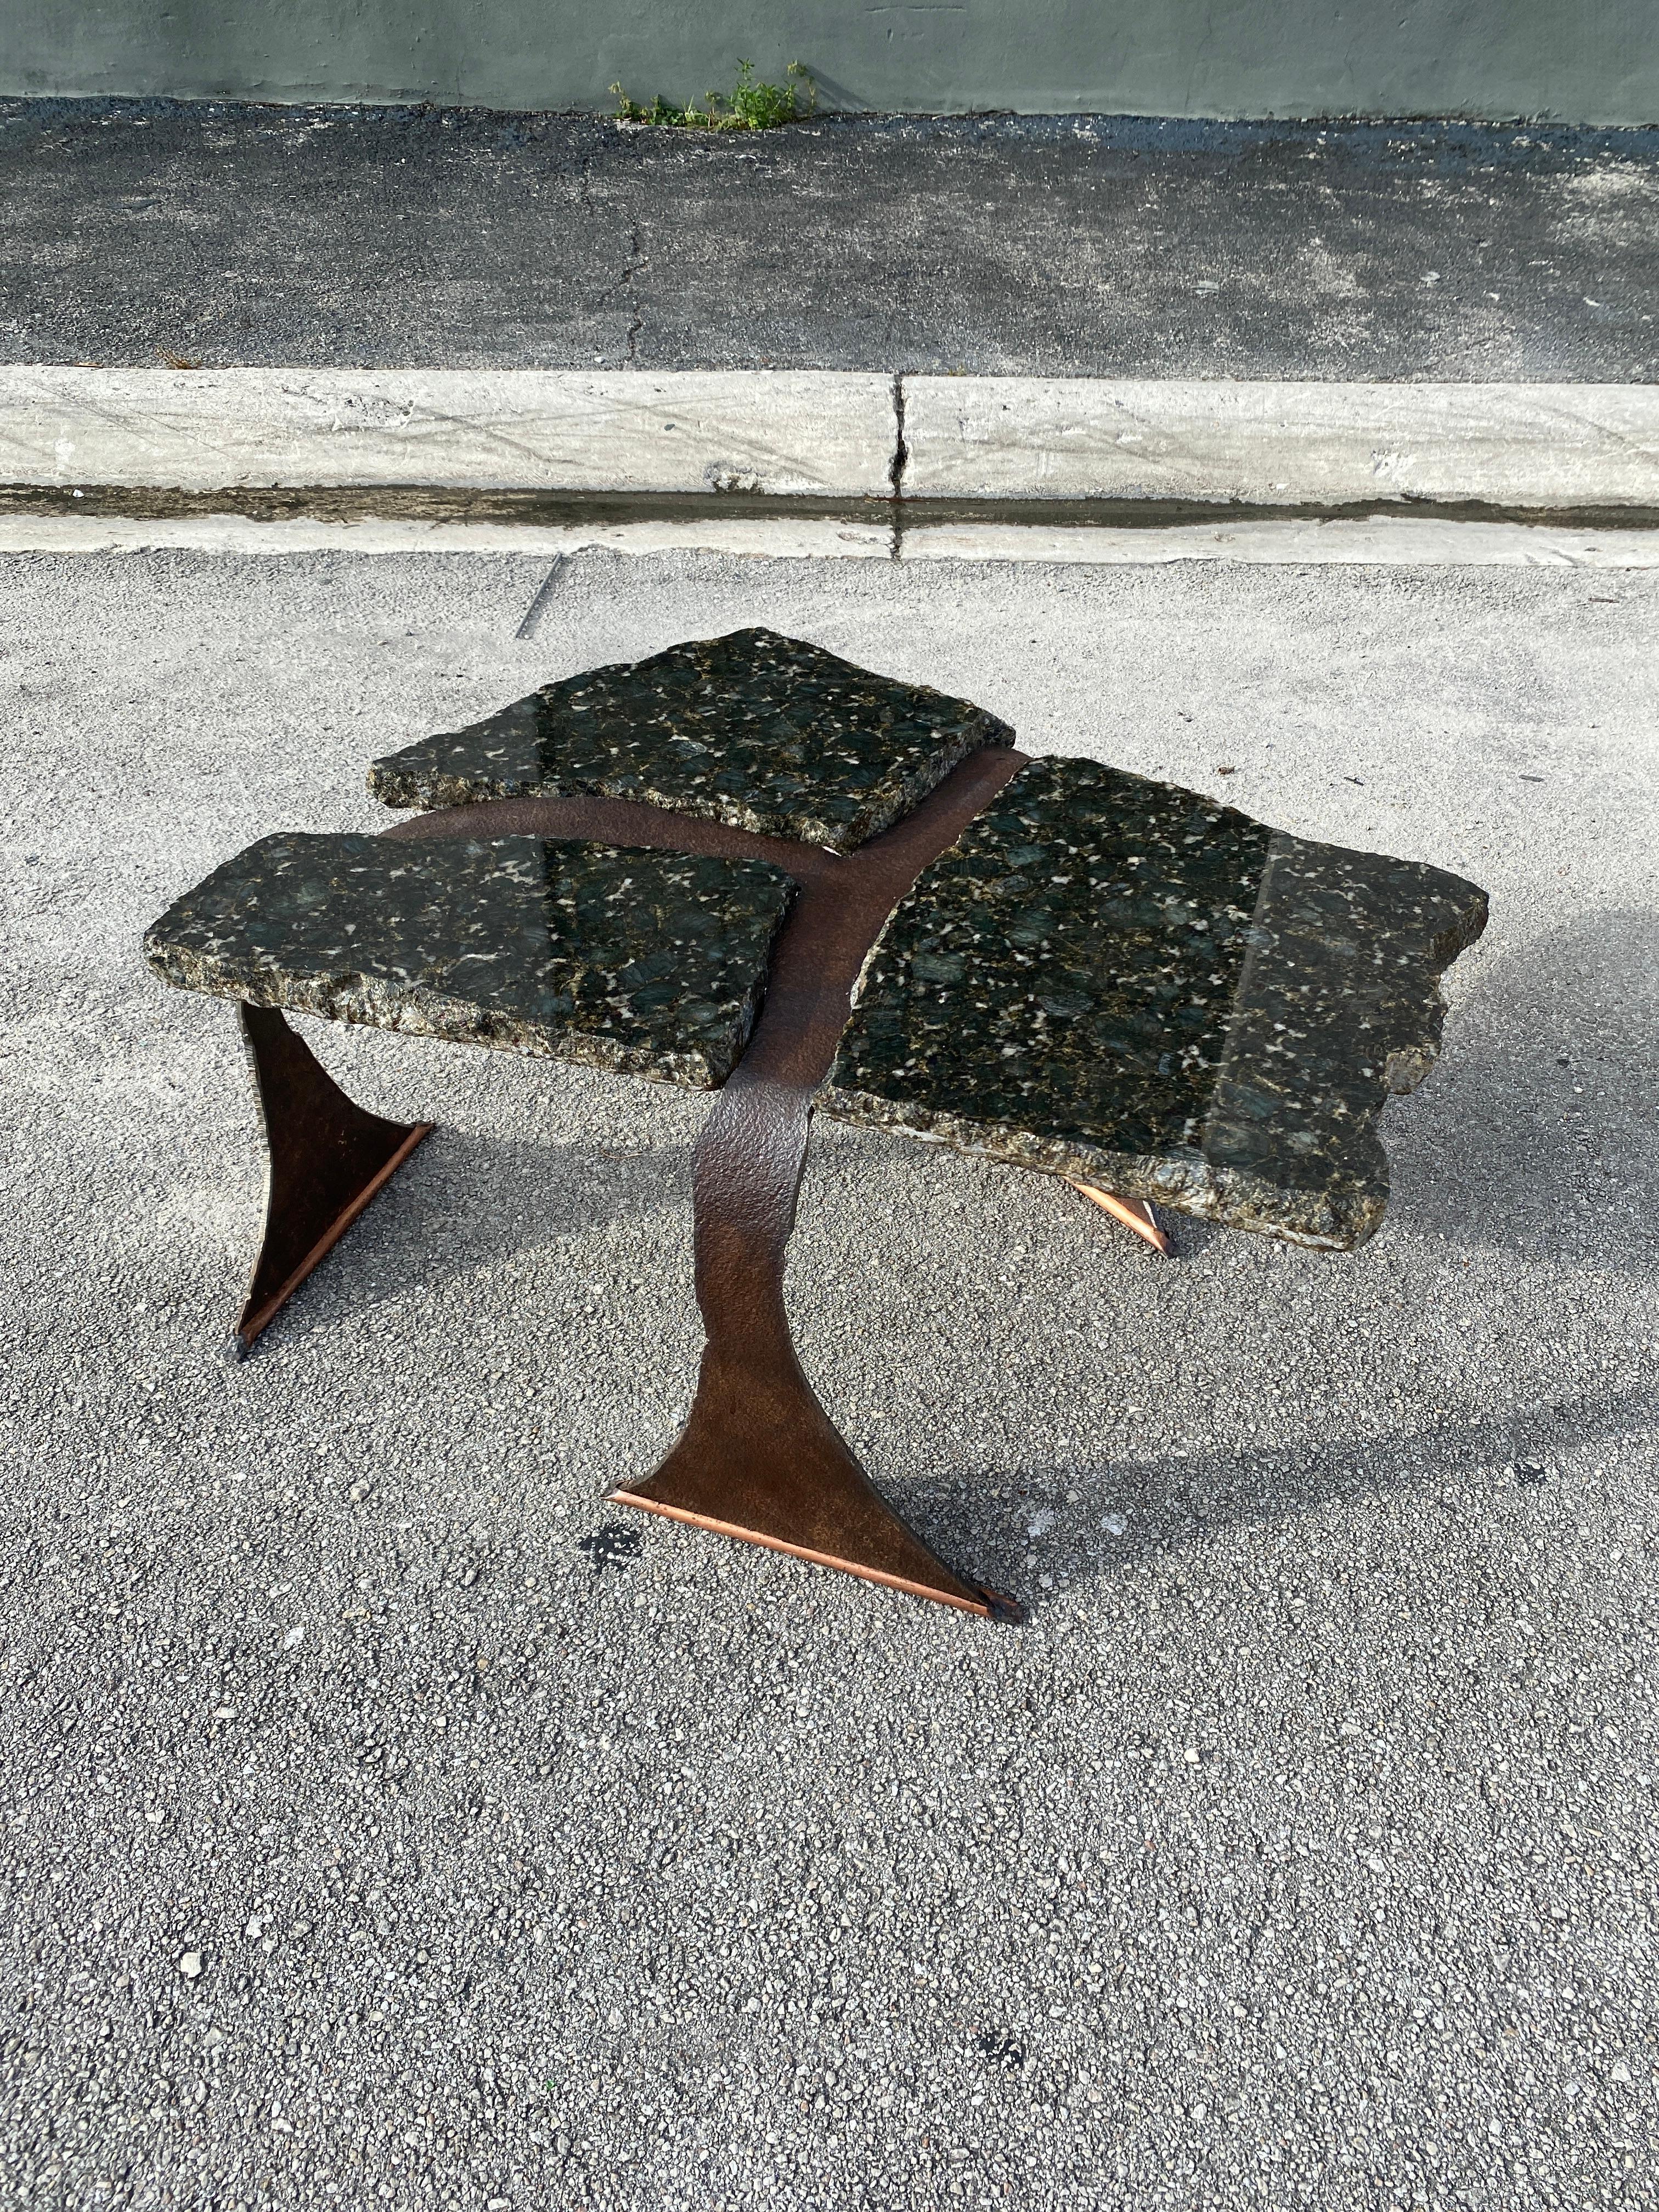 Postmoderner brutalistischer Tisch aus geschmiedetem Stahl mit drei Unterteilungen, auf denen dicker Granit sitzt. Hergestellt in Kanada von einem unbekannten Künstler.

34 